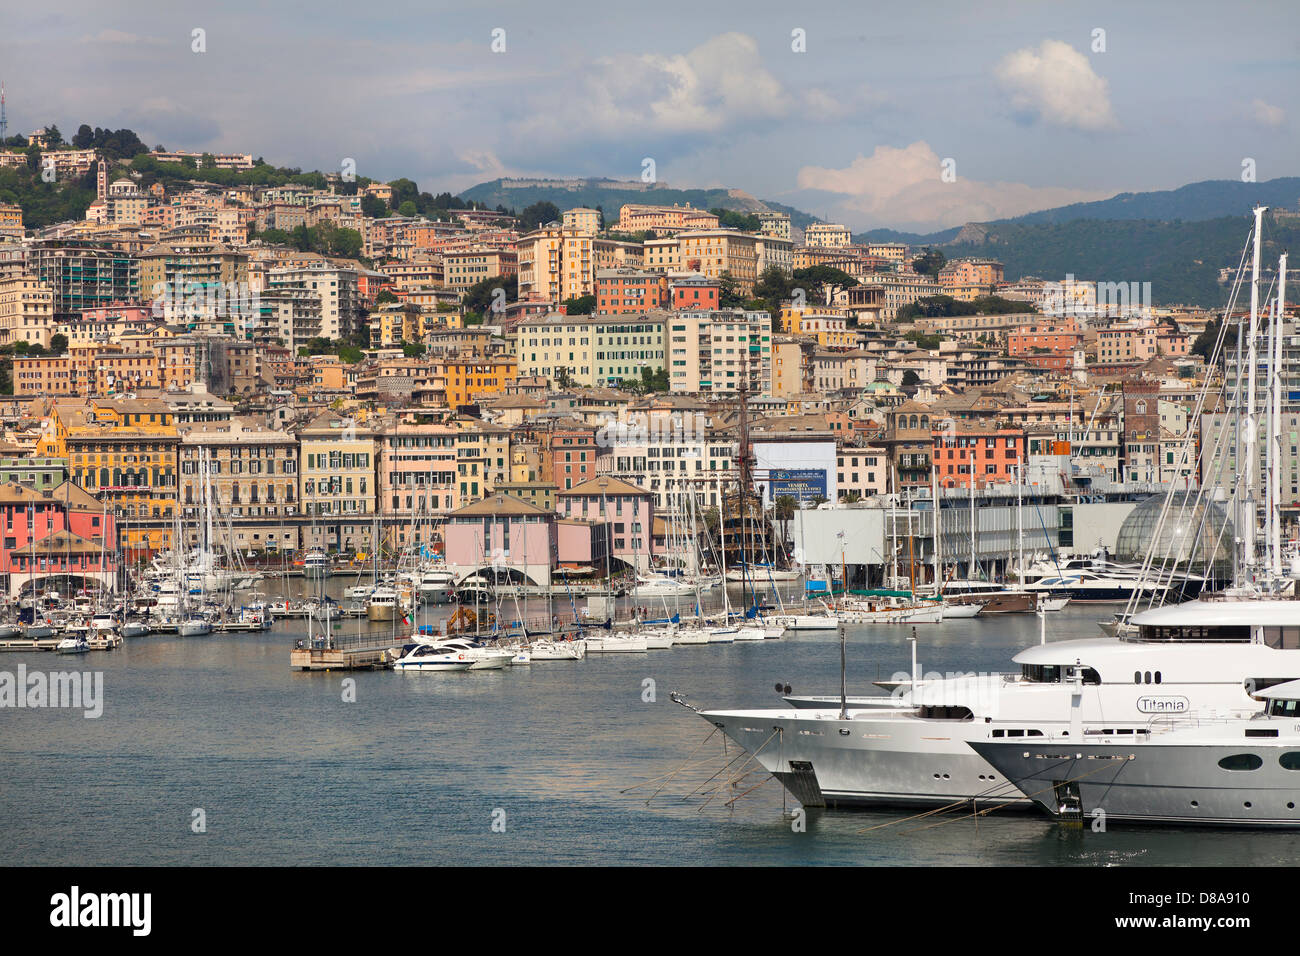 Le port de Gênes, en Italie, en vue de vérification à quai à l'intérieur des terres, maisons typiques de Gênes. Yachts privés en premier plan. Banque D'Images